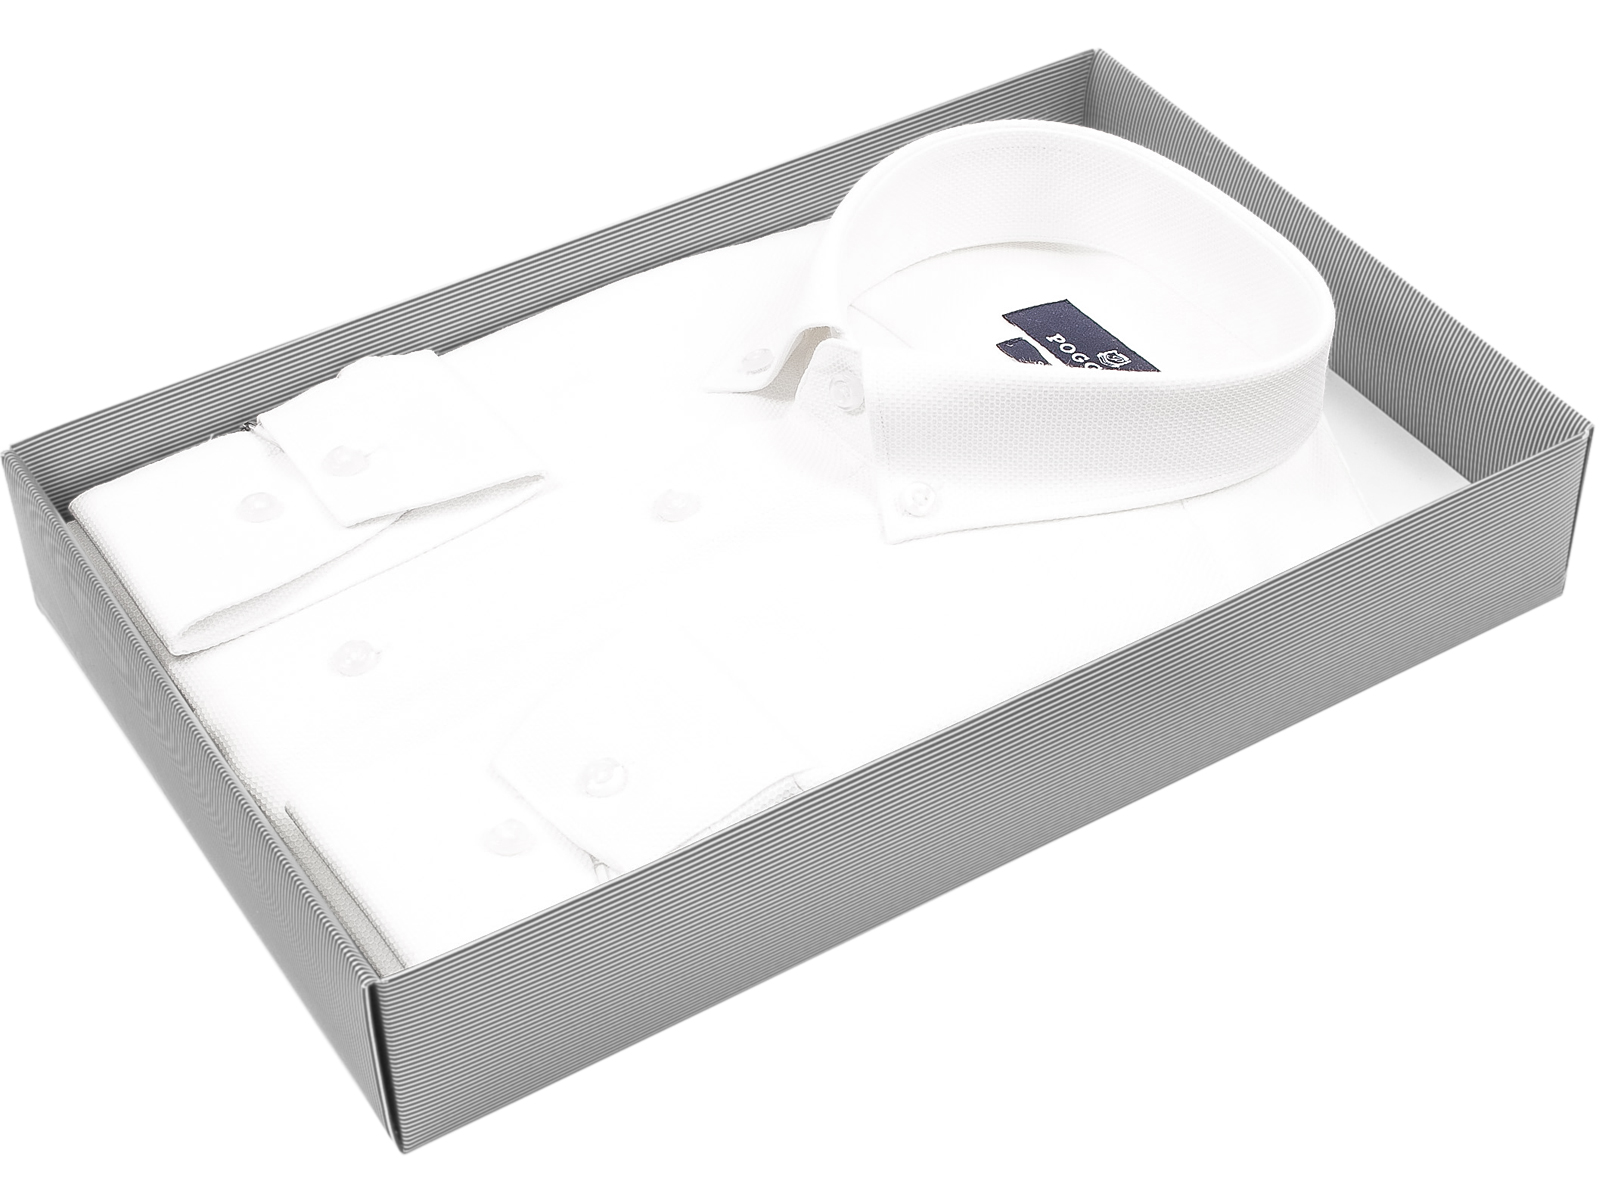 Белая приталенная мужская рубашка Poggino 6001-161 с длинными рукавами и воротником баттен-даун купить в Москве недорого